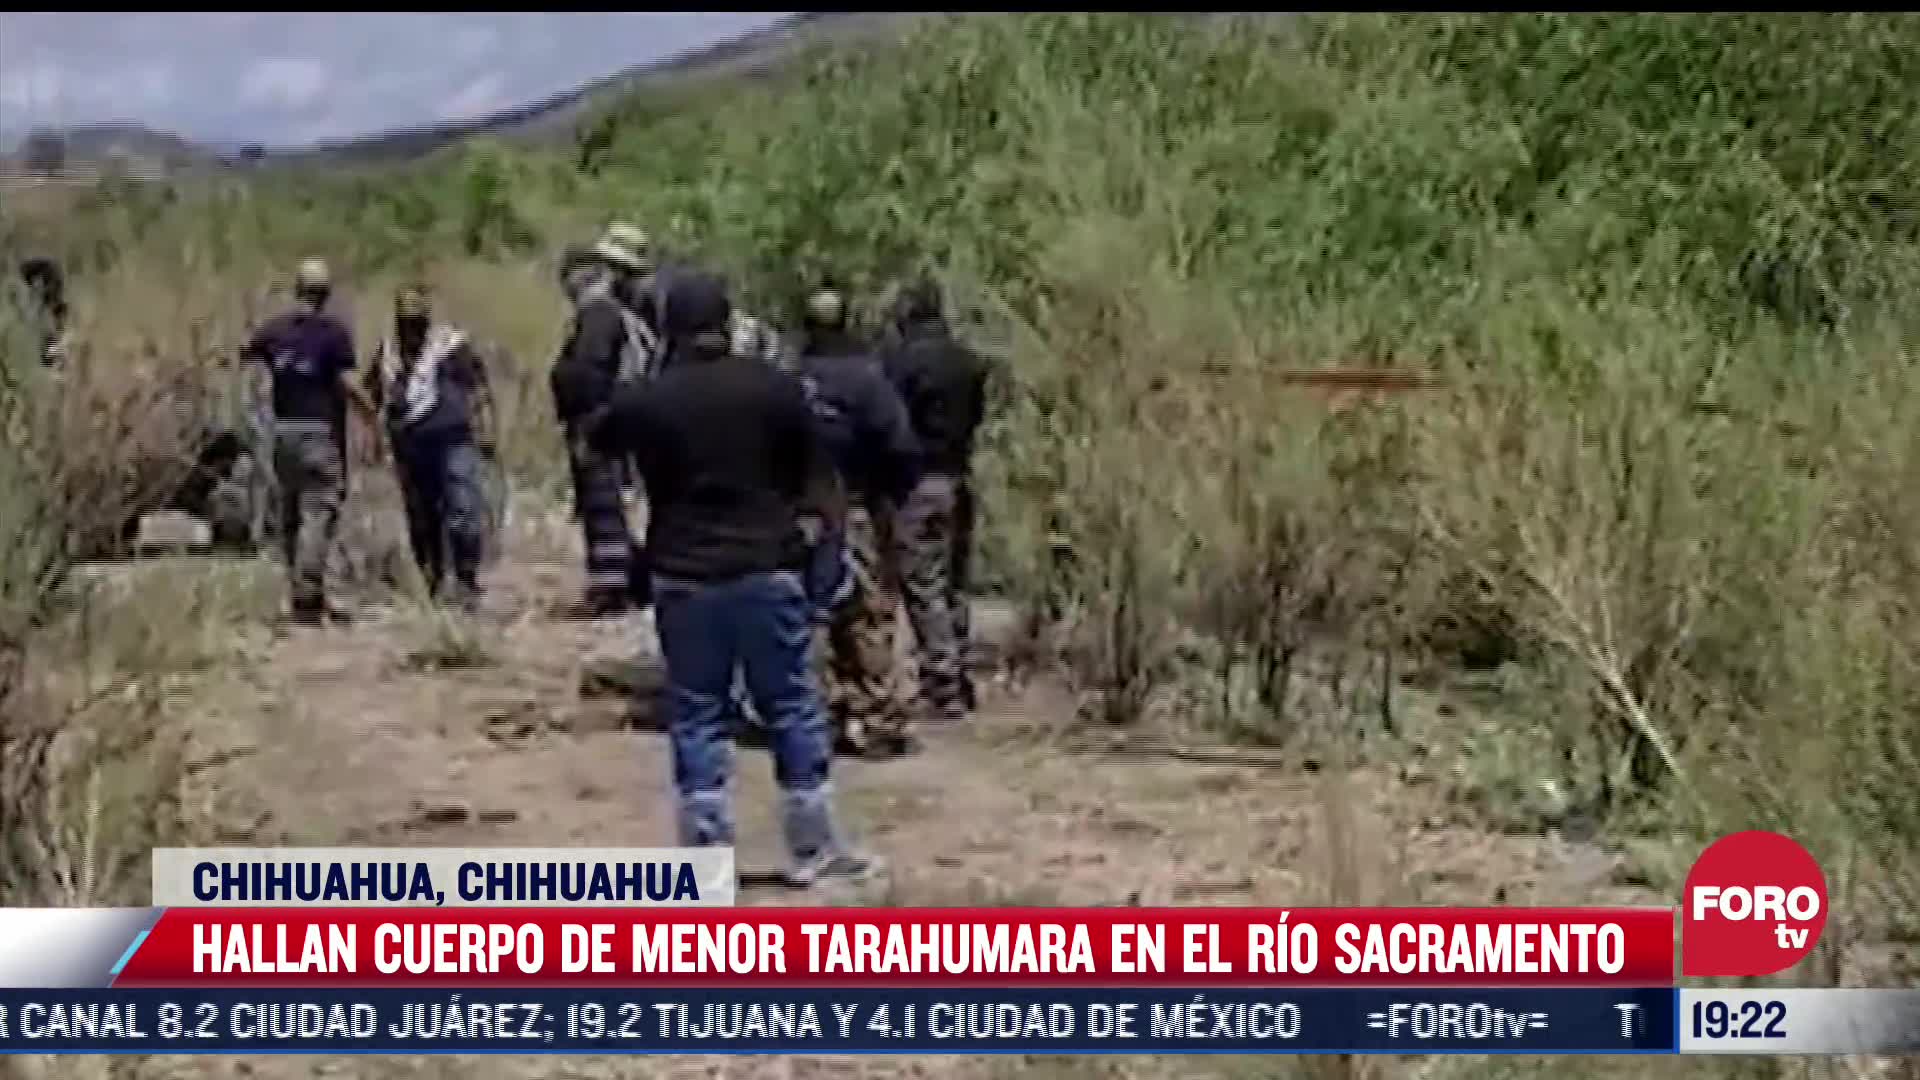 hallan cuerpo de menor tarahumara arrastrada por el rio sacramento en chihuahua